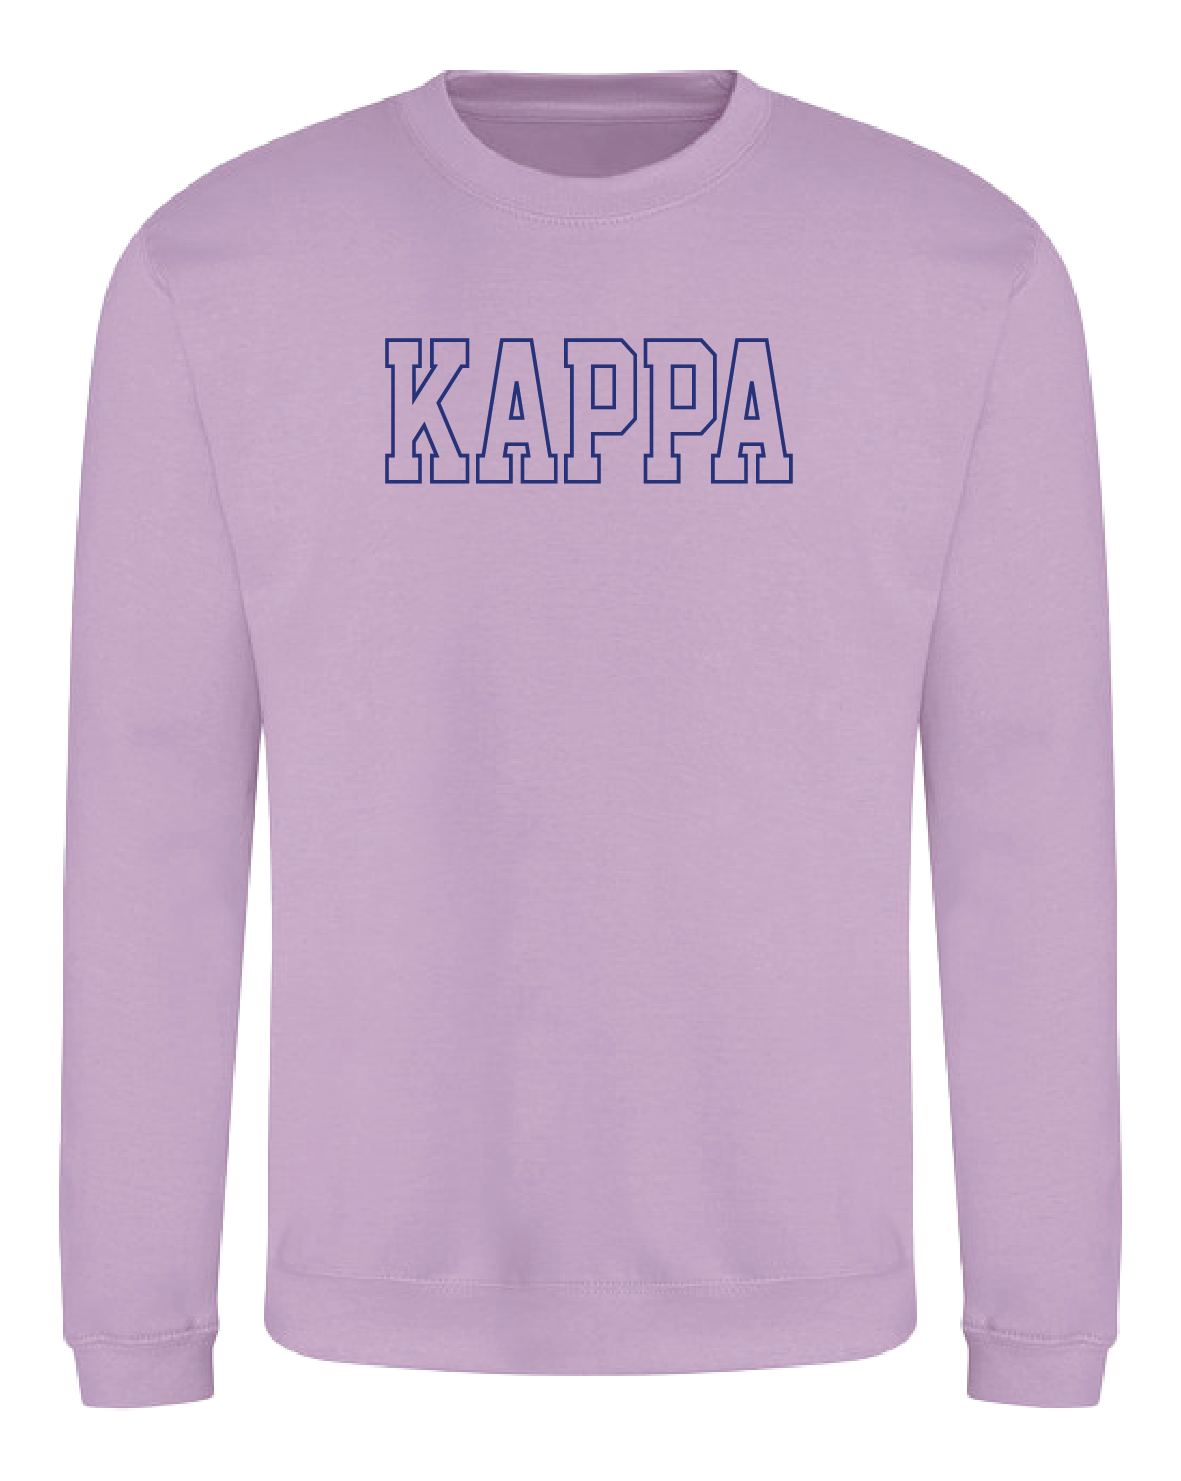 WS - Kappa Kappa Gamma Block Crewneck (min qty 6) $32 / $70